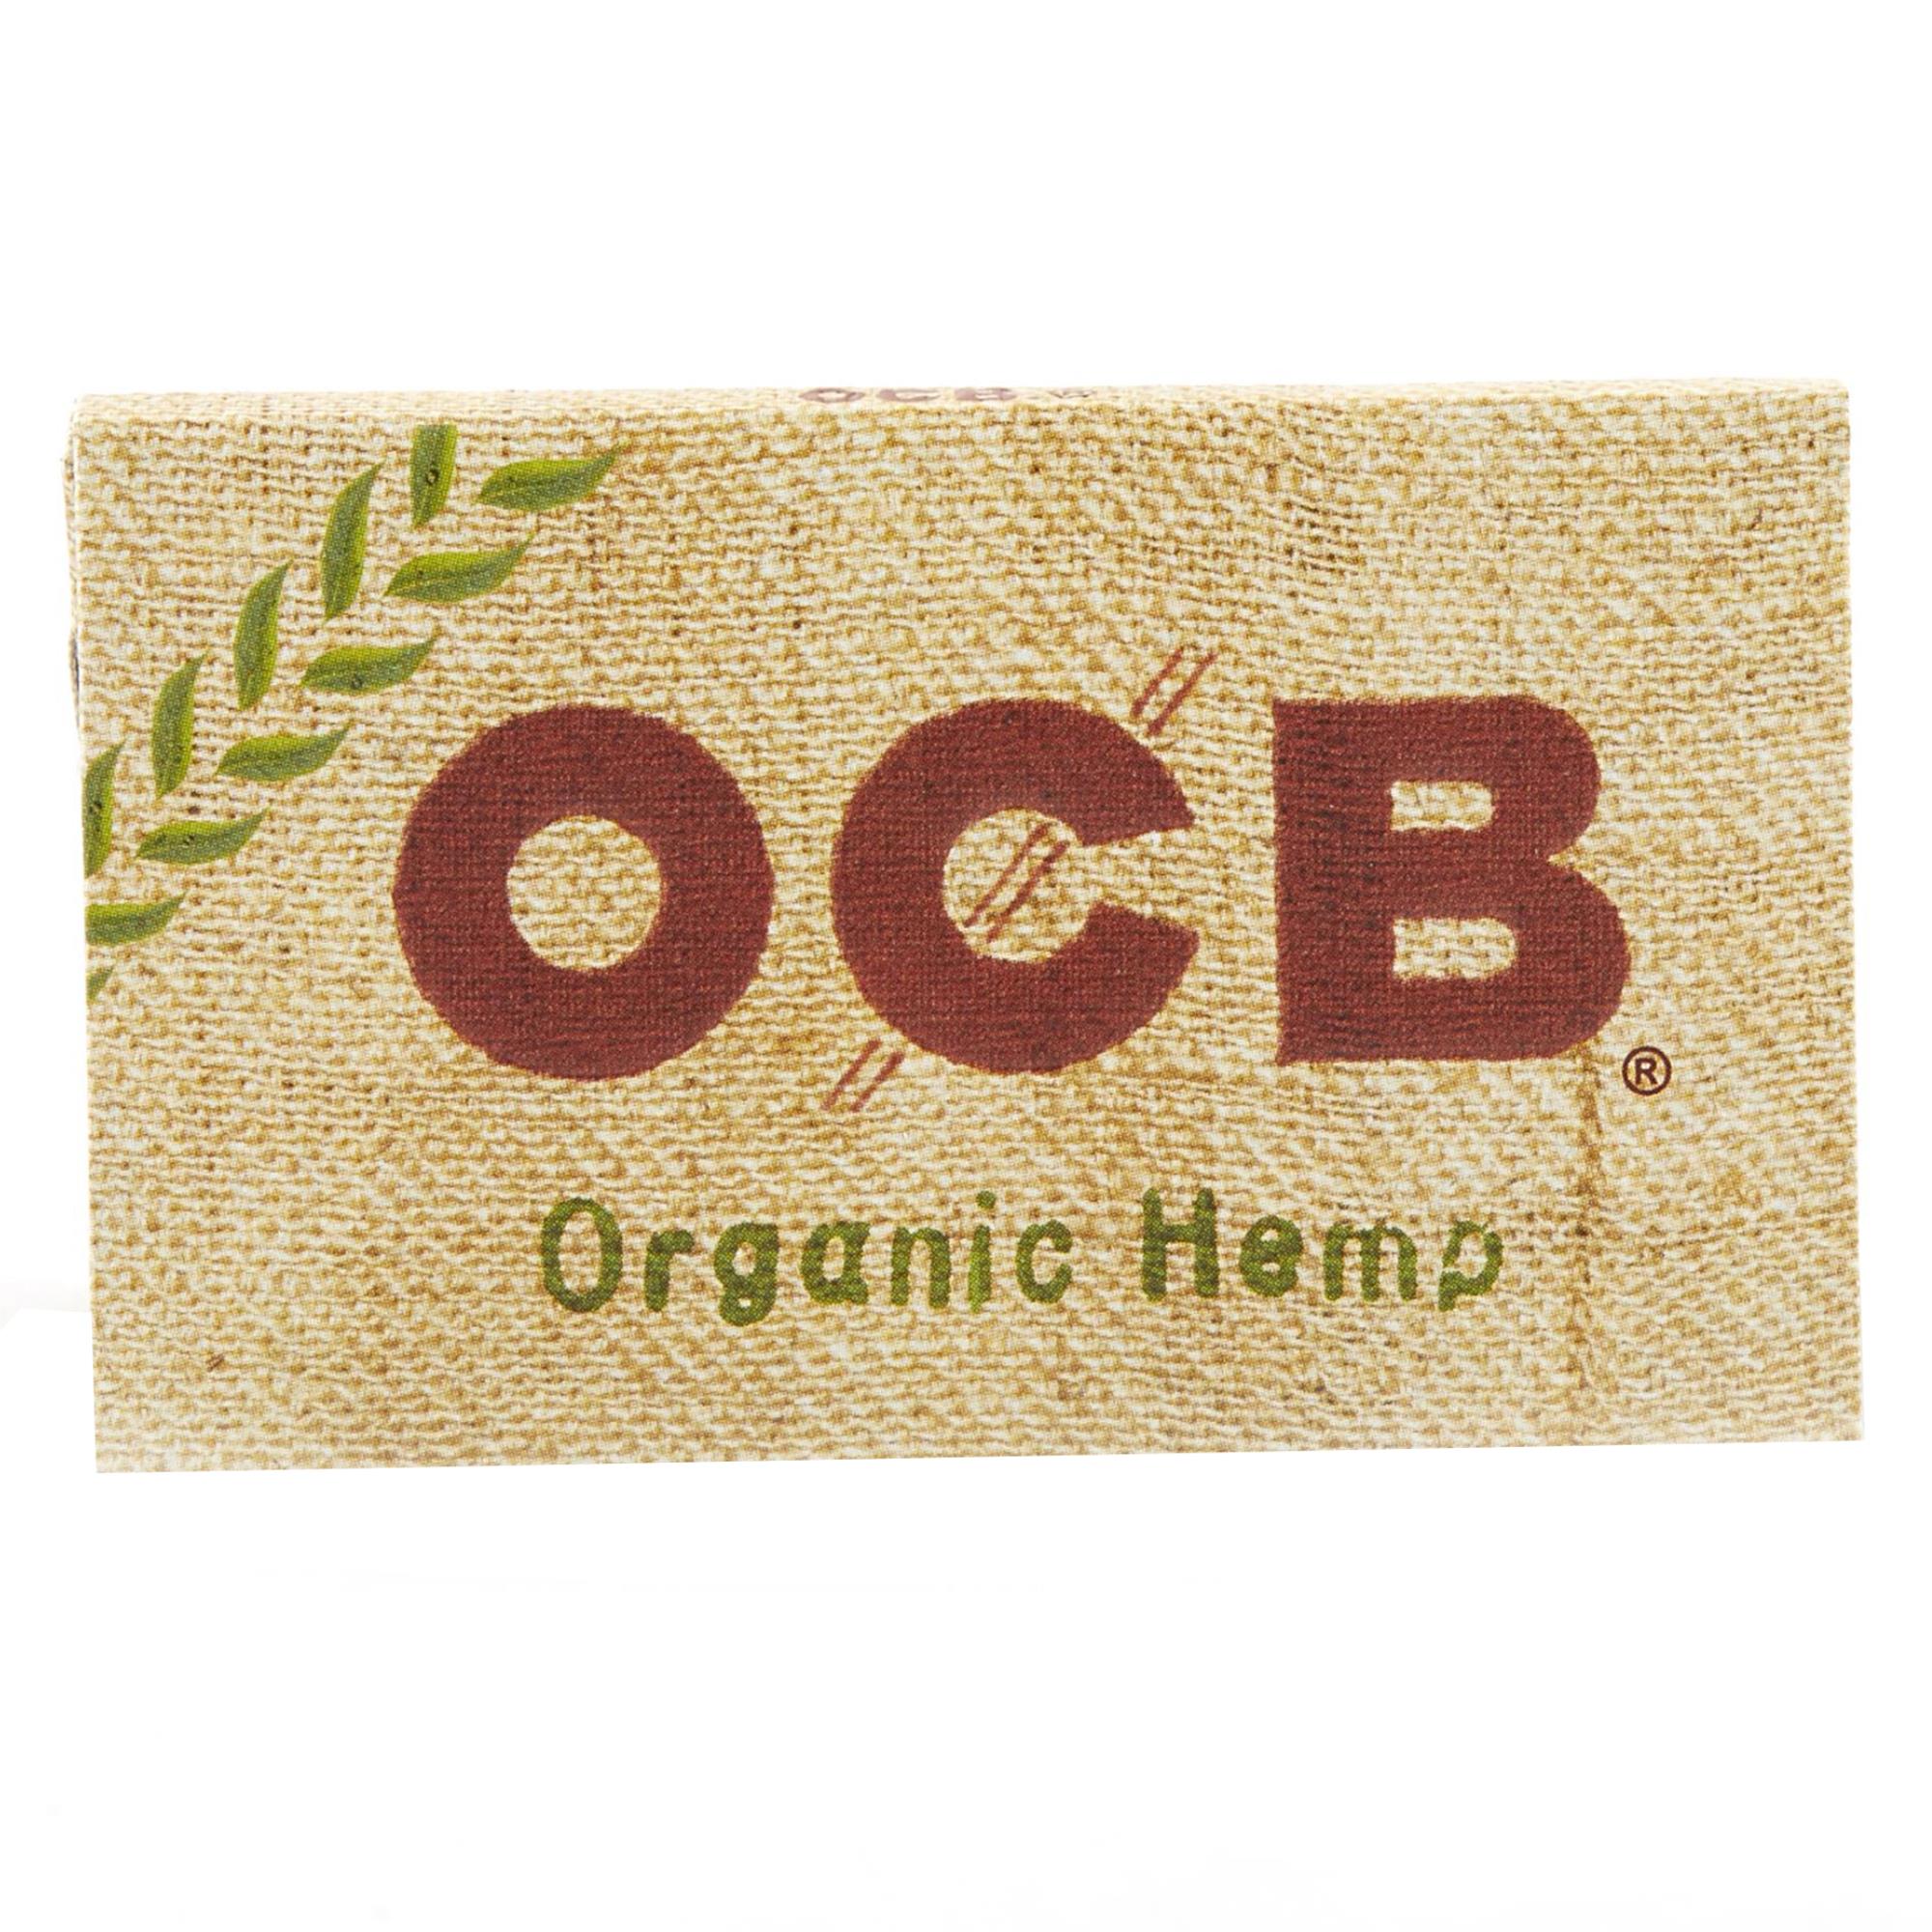 OCB ORGANIC HEMP